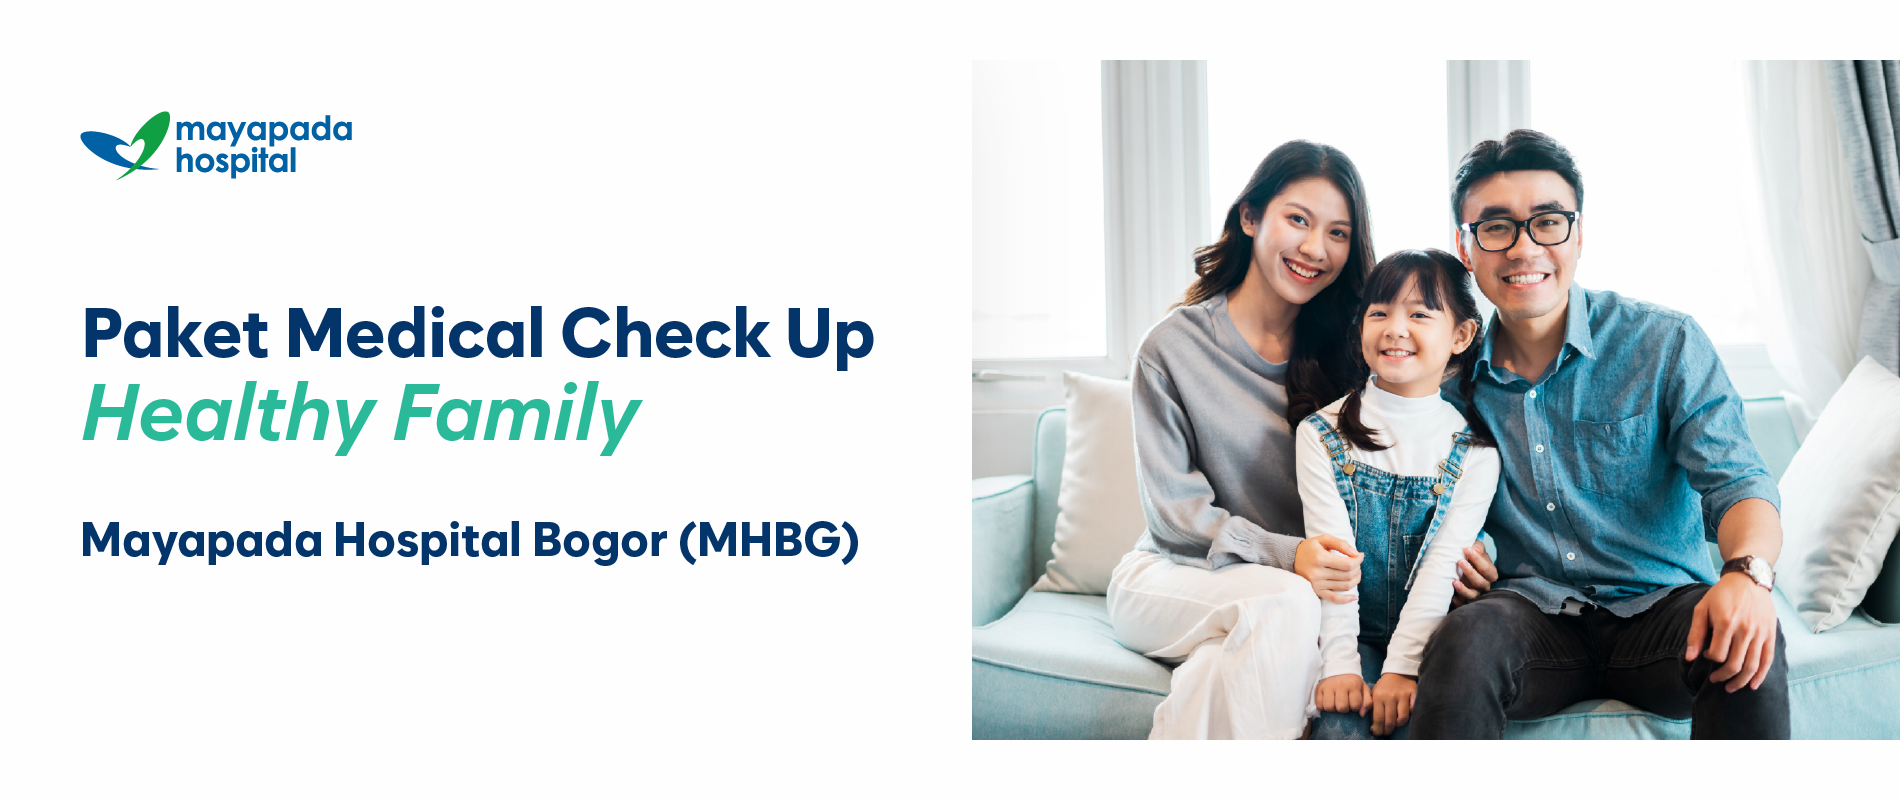 Paket Medical Check Up Healthy Family IMG